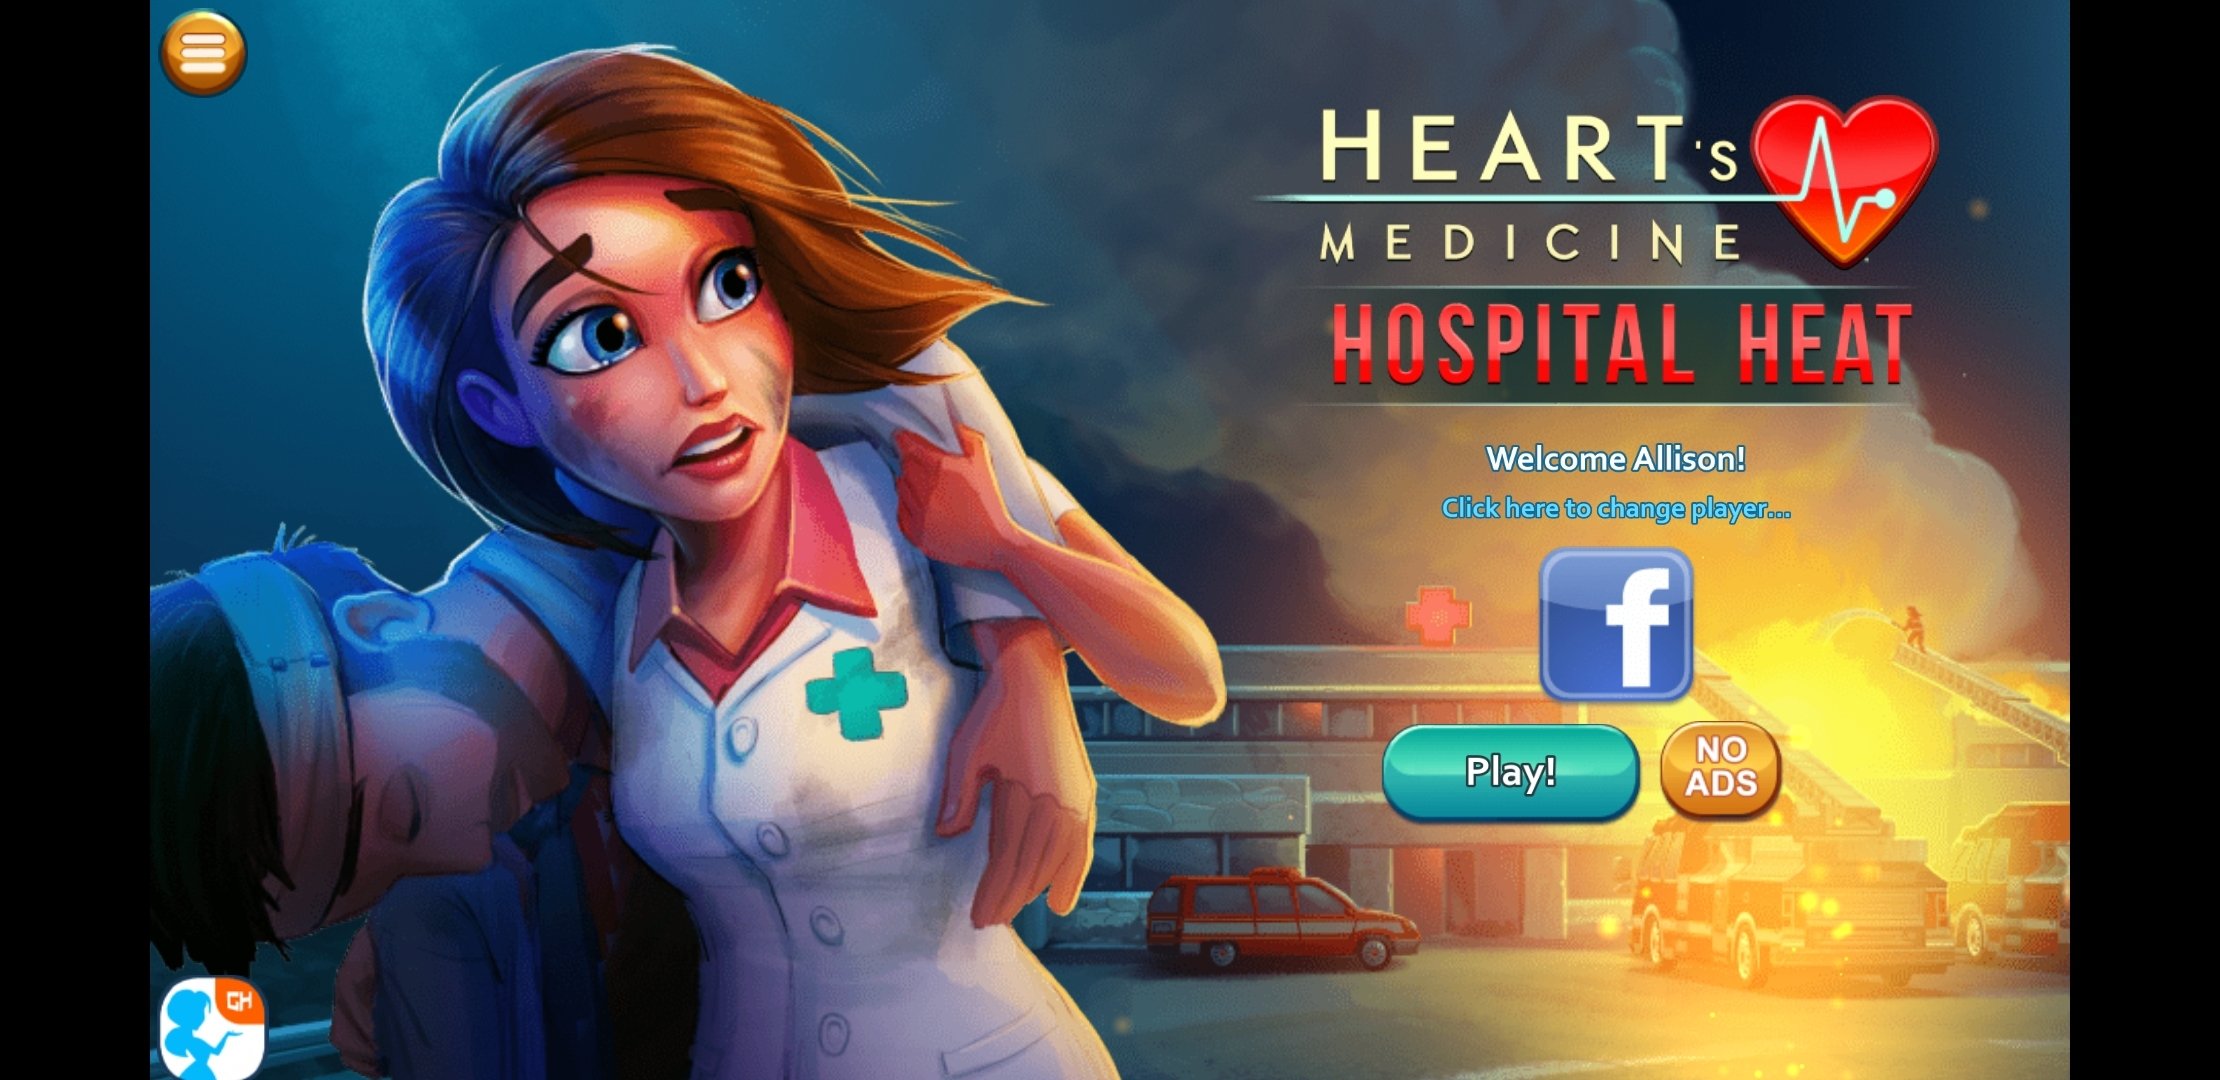 Heart's Medicine Time to Heal #01 - Vamos Jogar Gameplay Português PTBR 